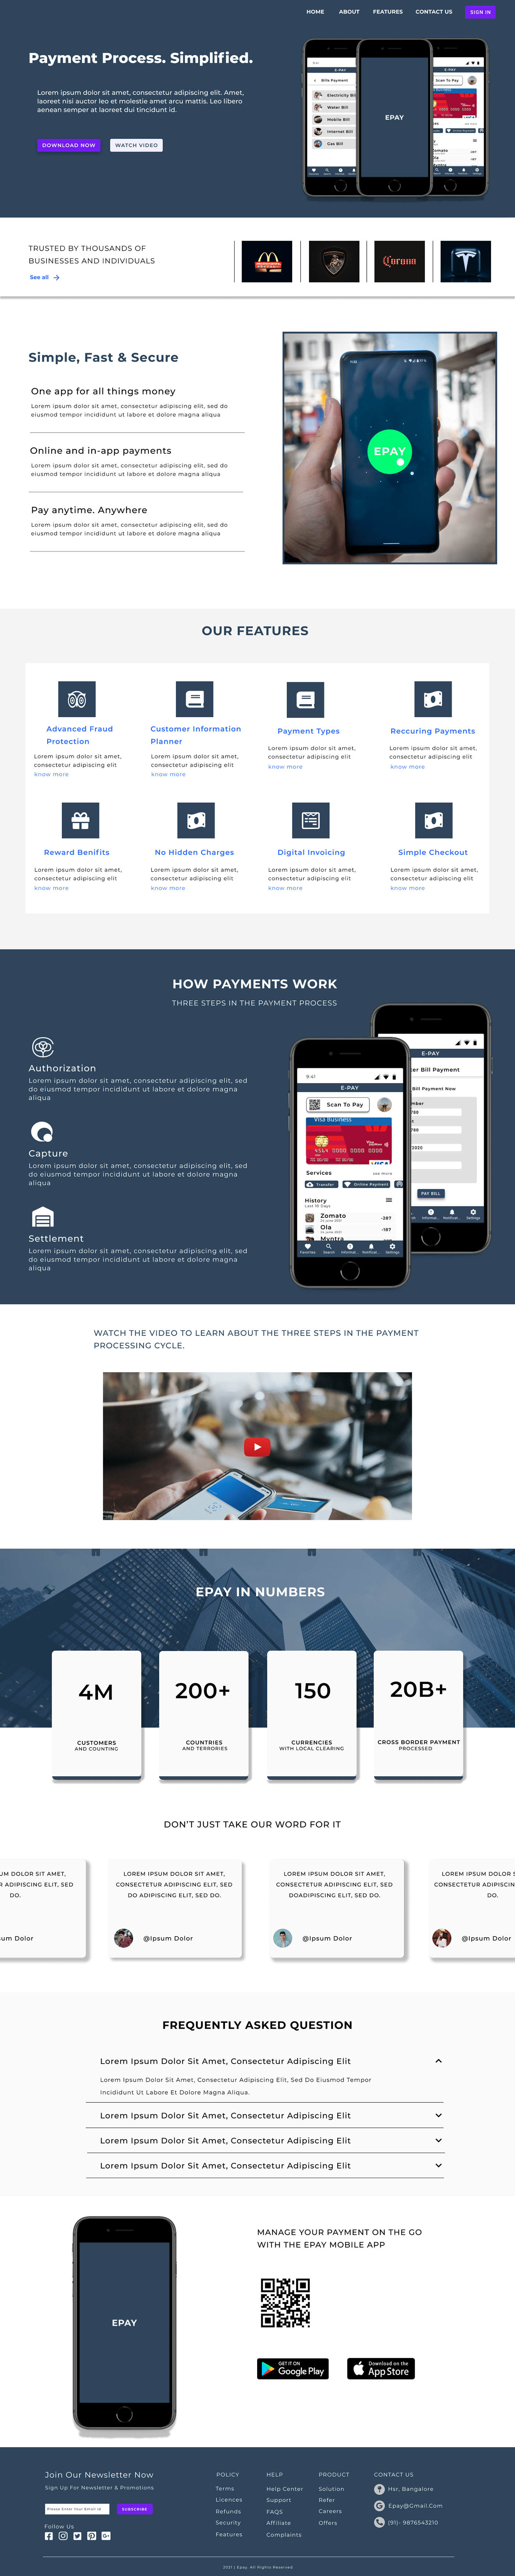 epay Payment App Web Design  web page